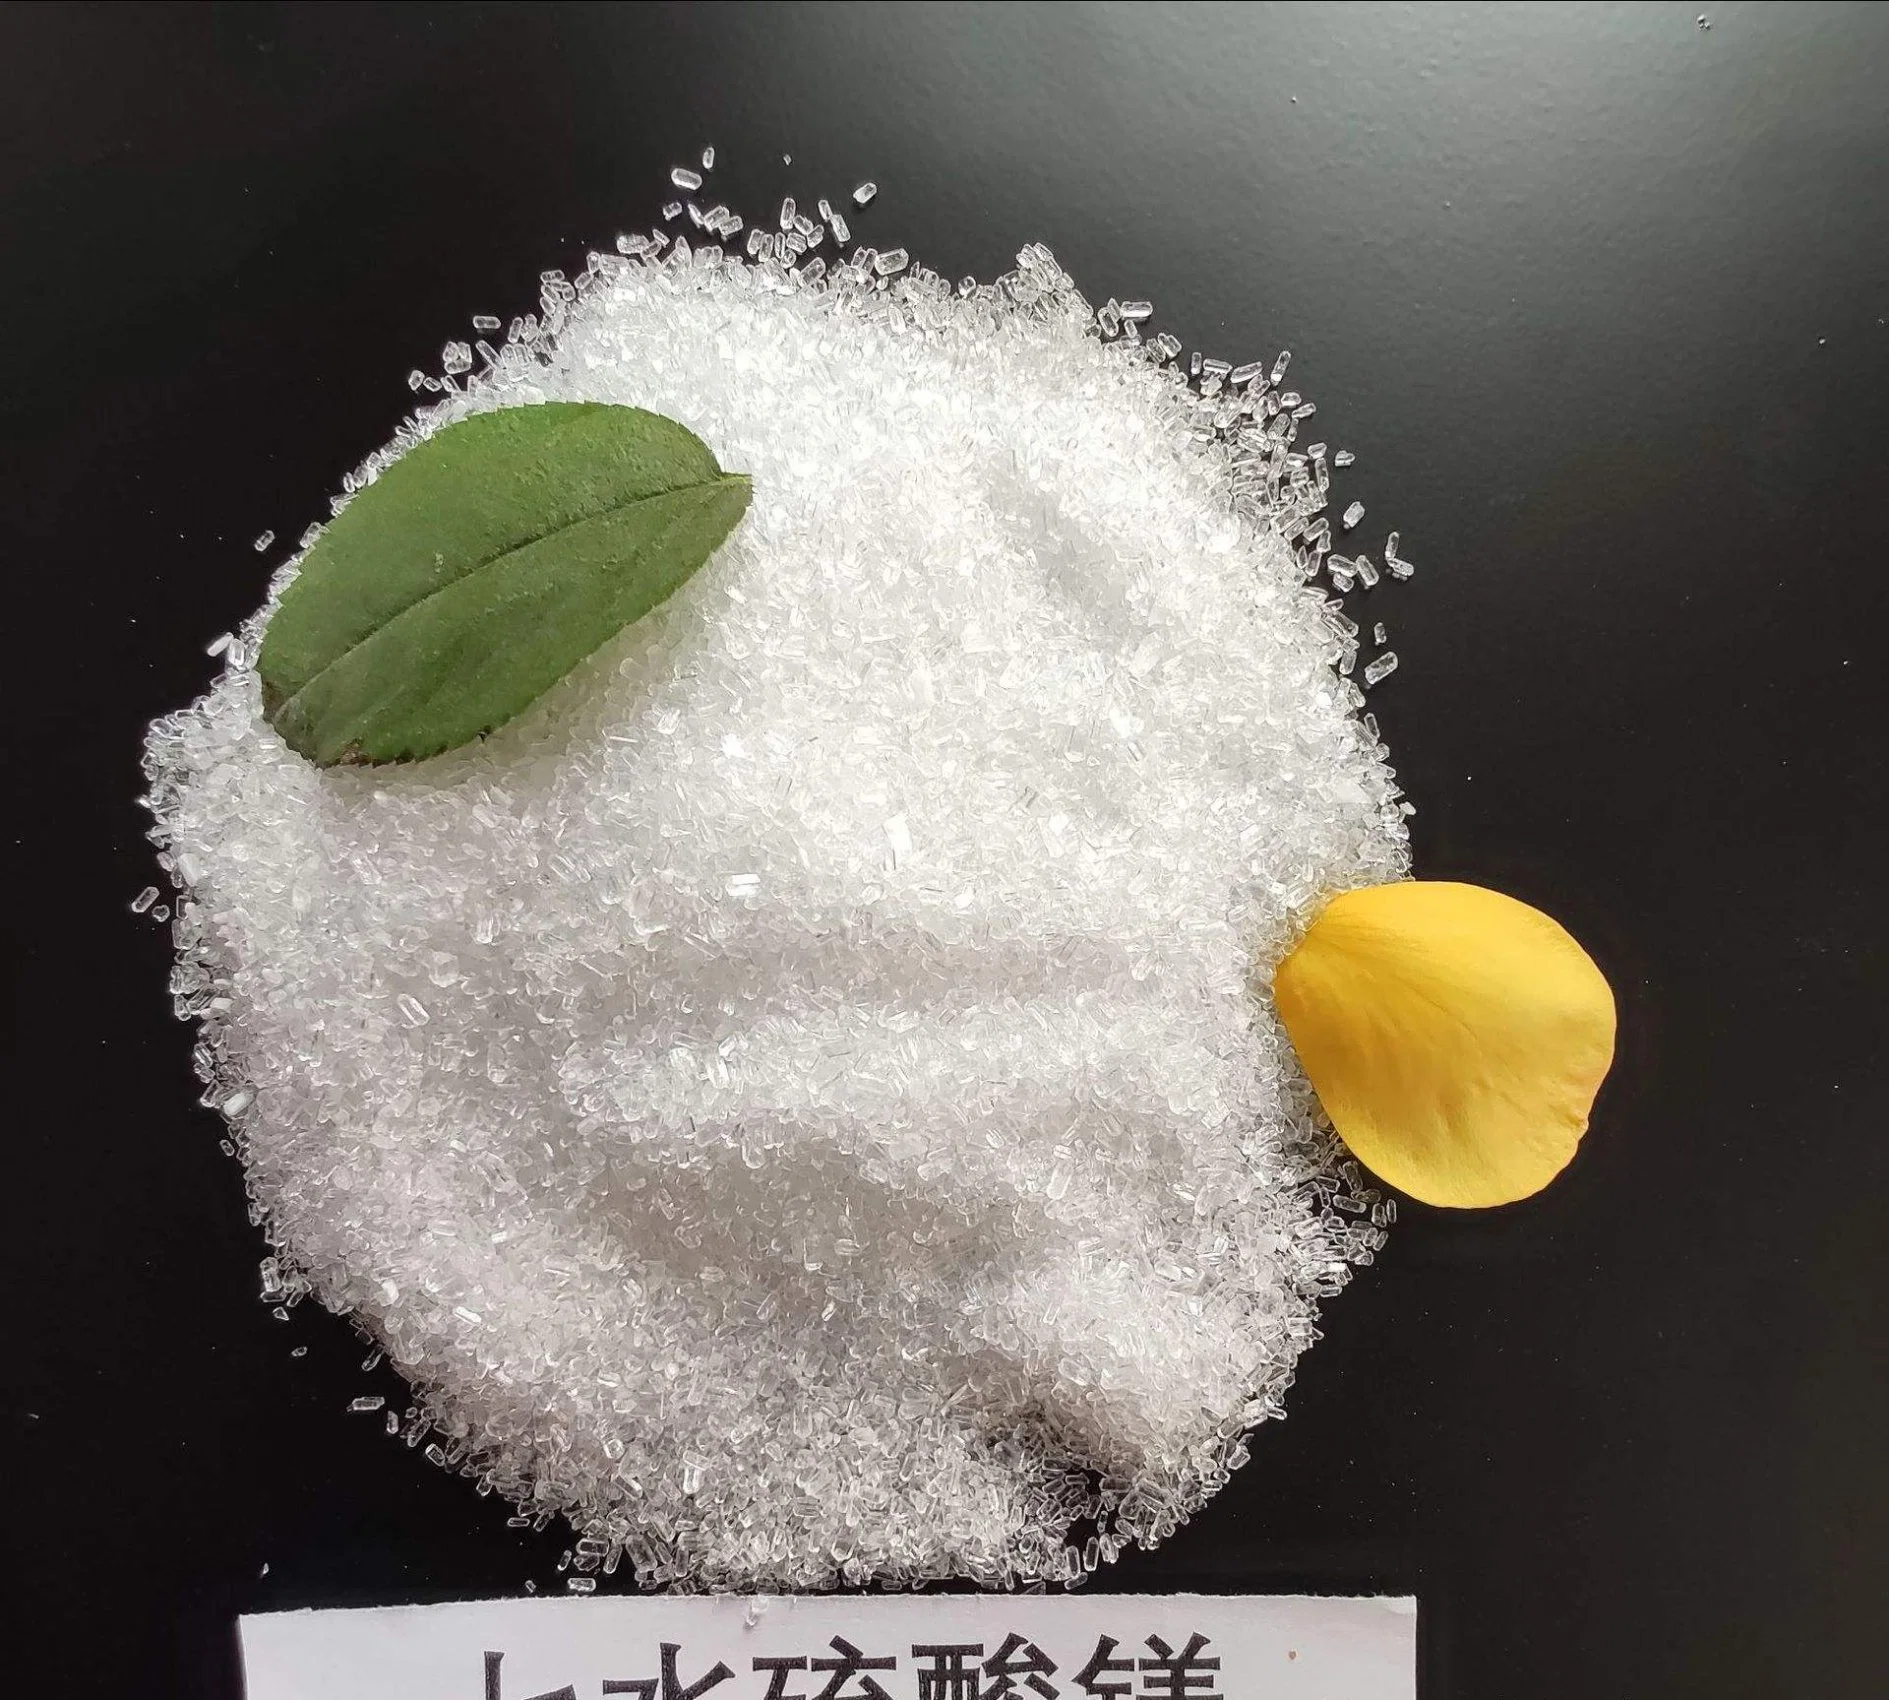 Blanco Cristal Sulfato de magnesio Sulfato de magnesio Heptahidrato ignorancia SAL con Granular